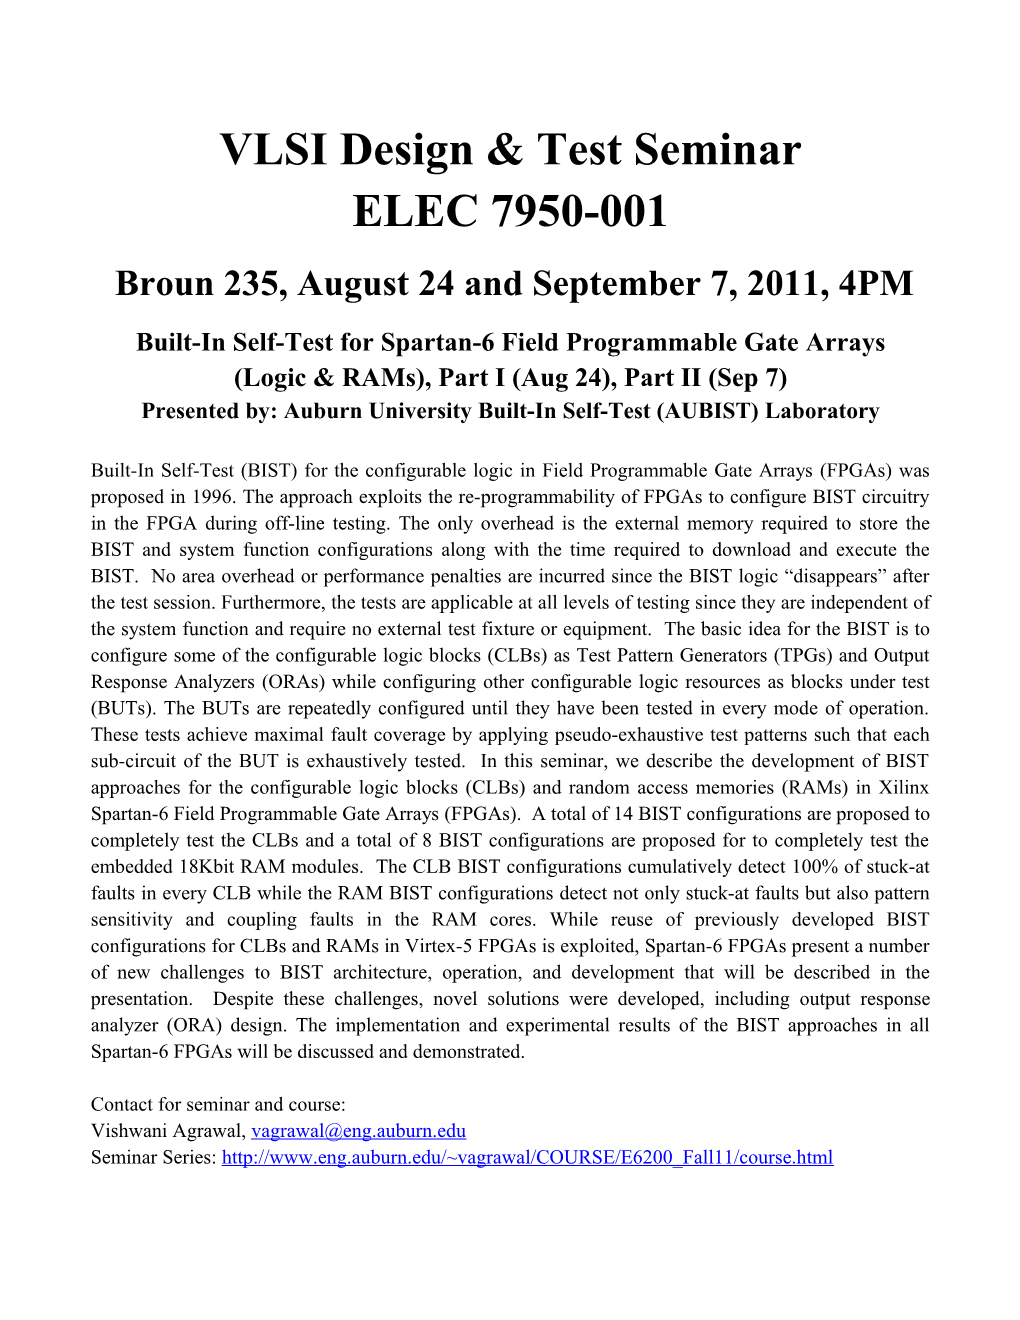 VLSI Design & Test Seminar ELEC 7950-001